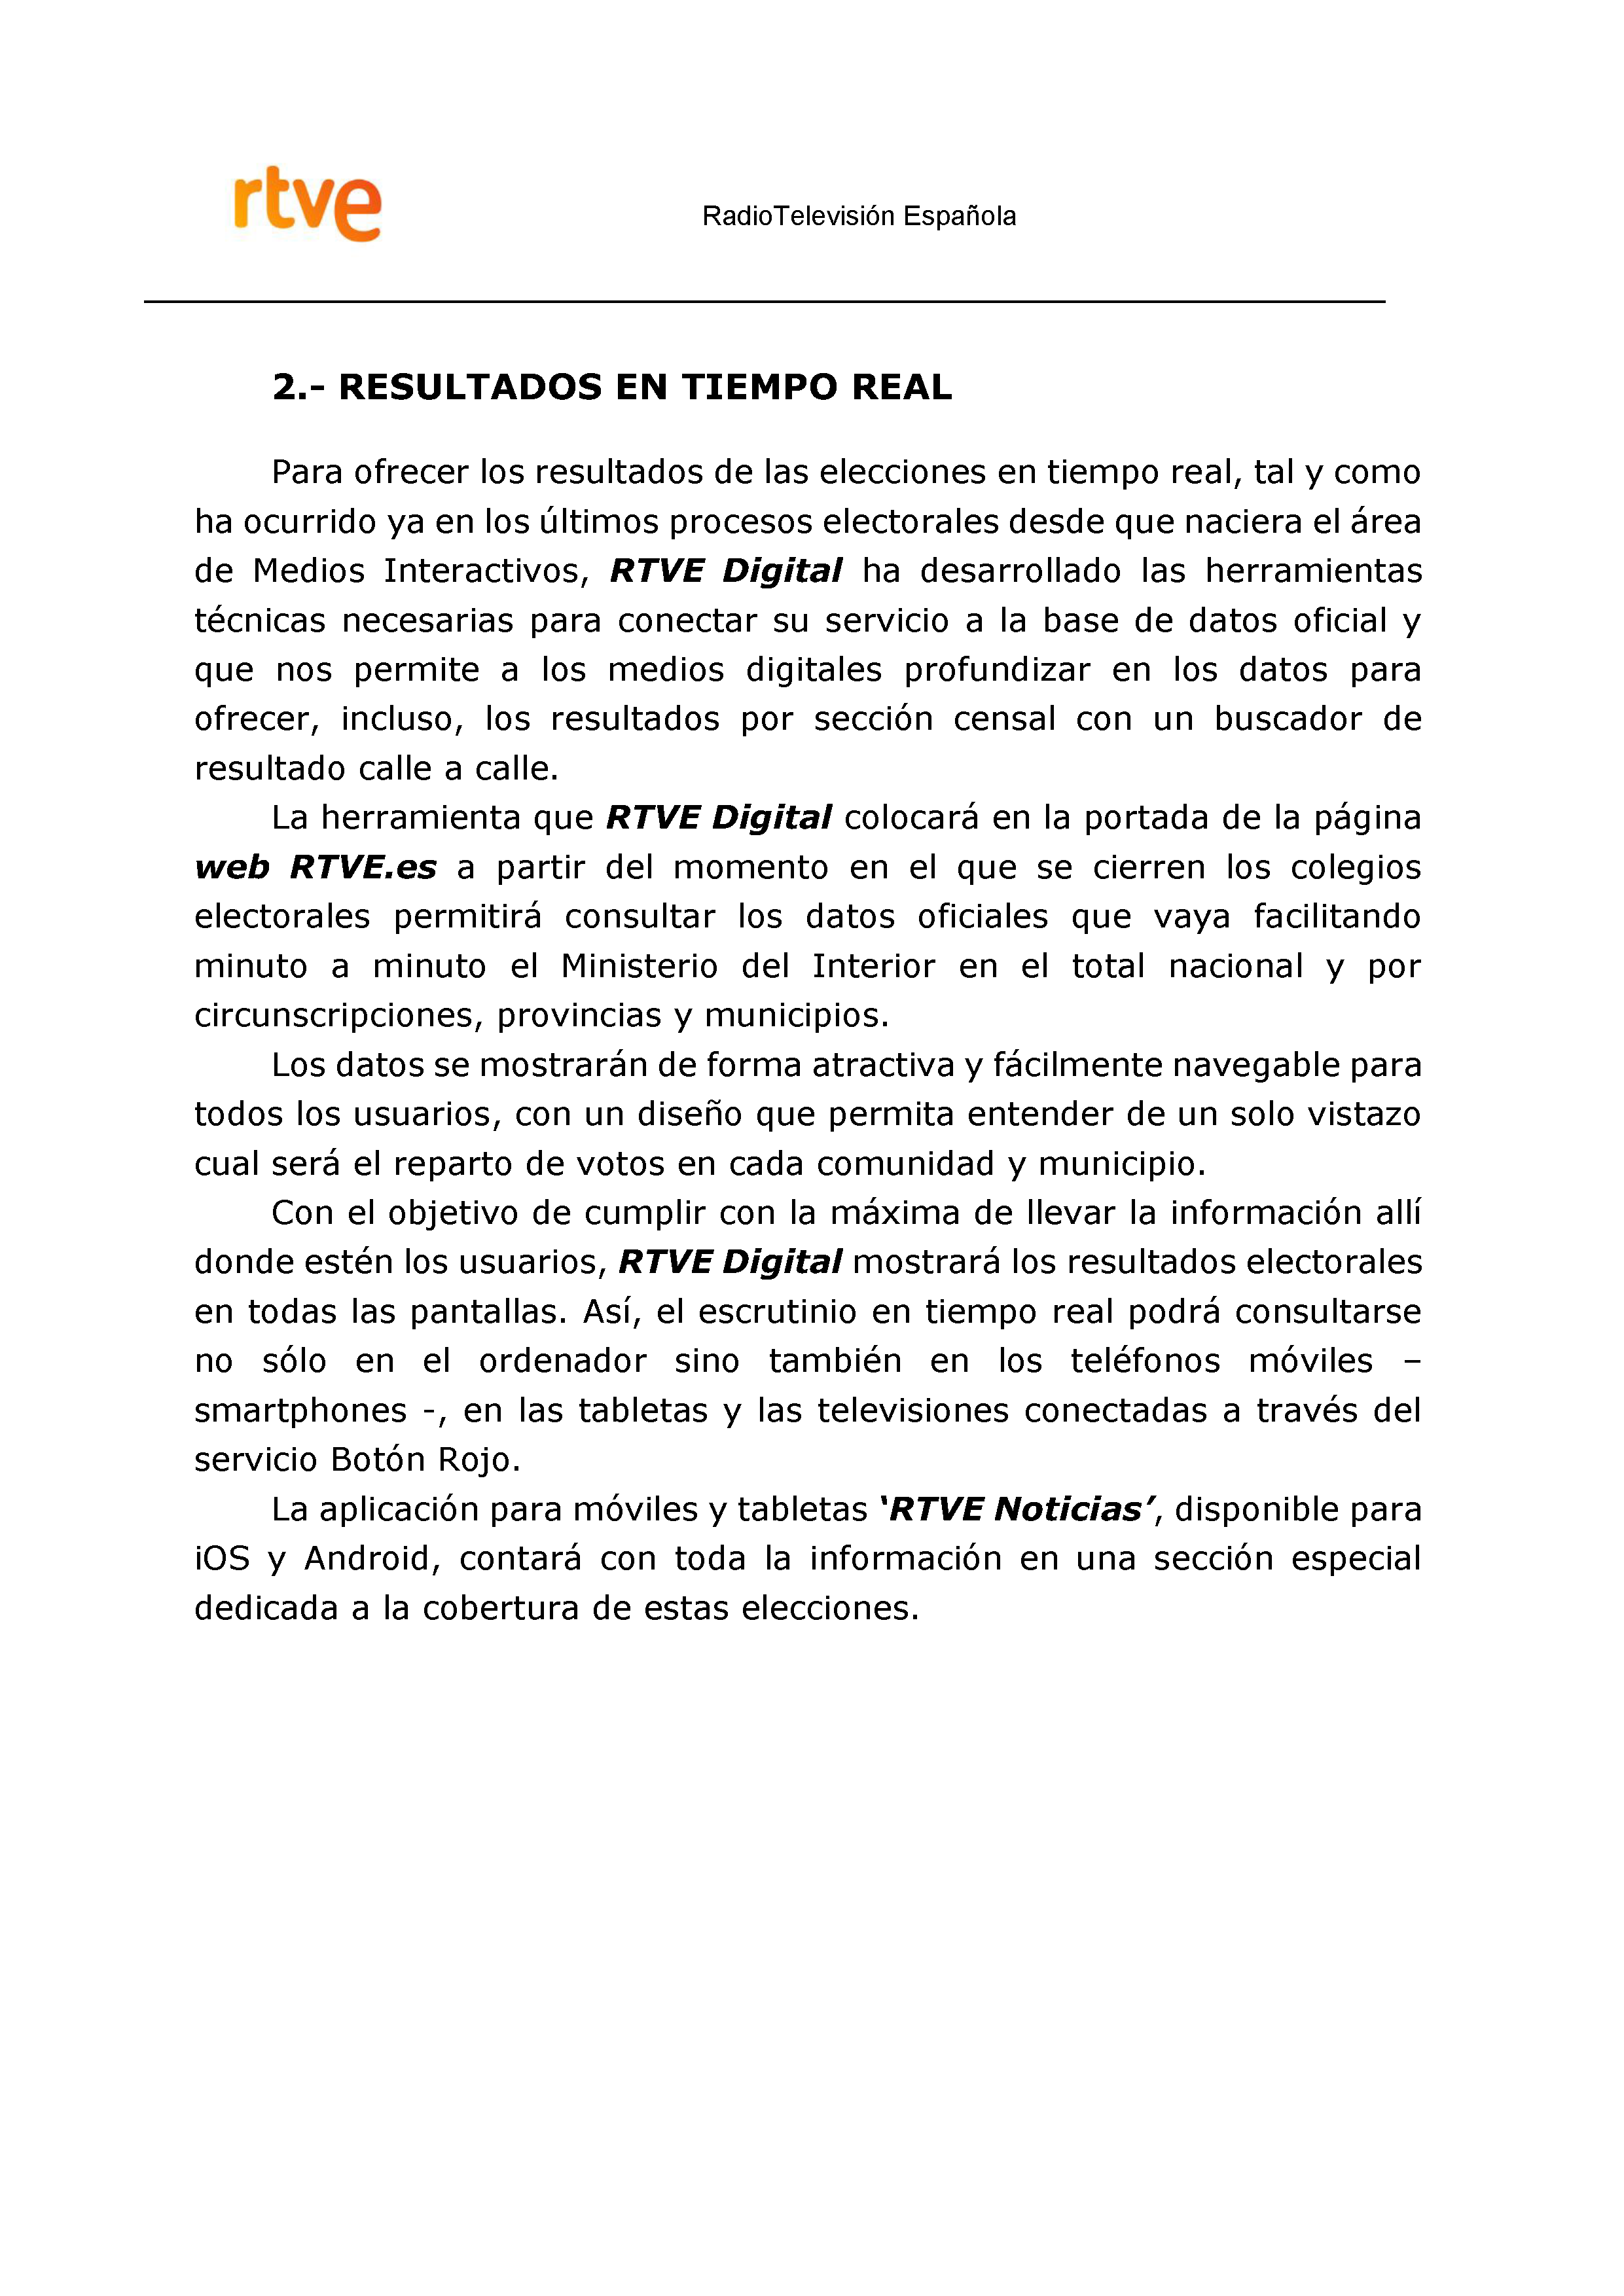 PLAN DE COBERTURA INFORMATIVA RTVE EN EXTREMADURA Pag 14